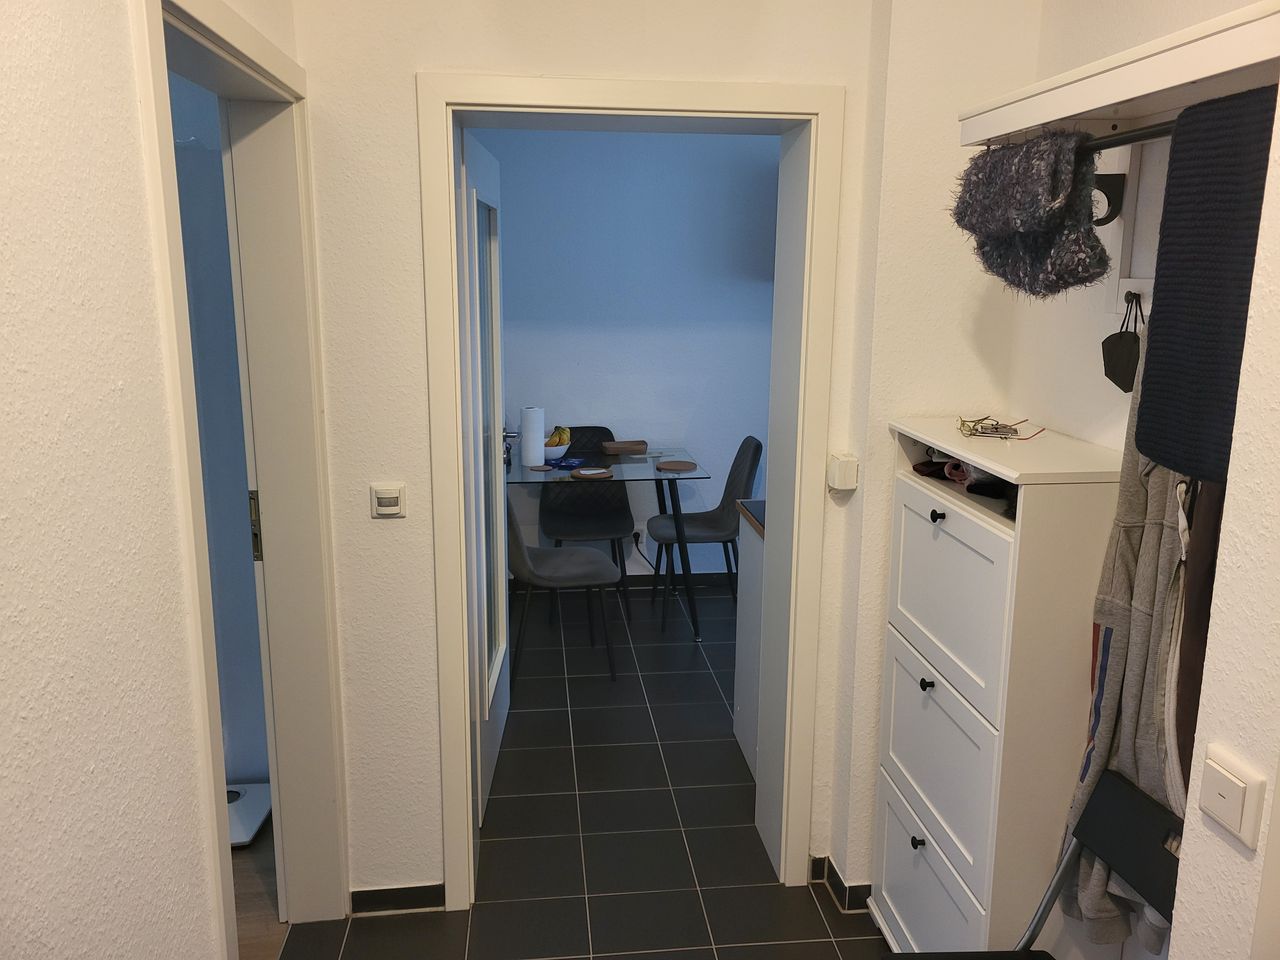 Modern, quiet apartment in great location - Düsseldorf